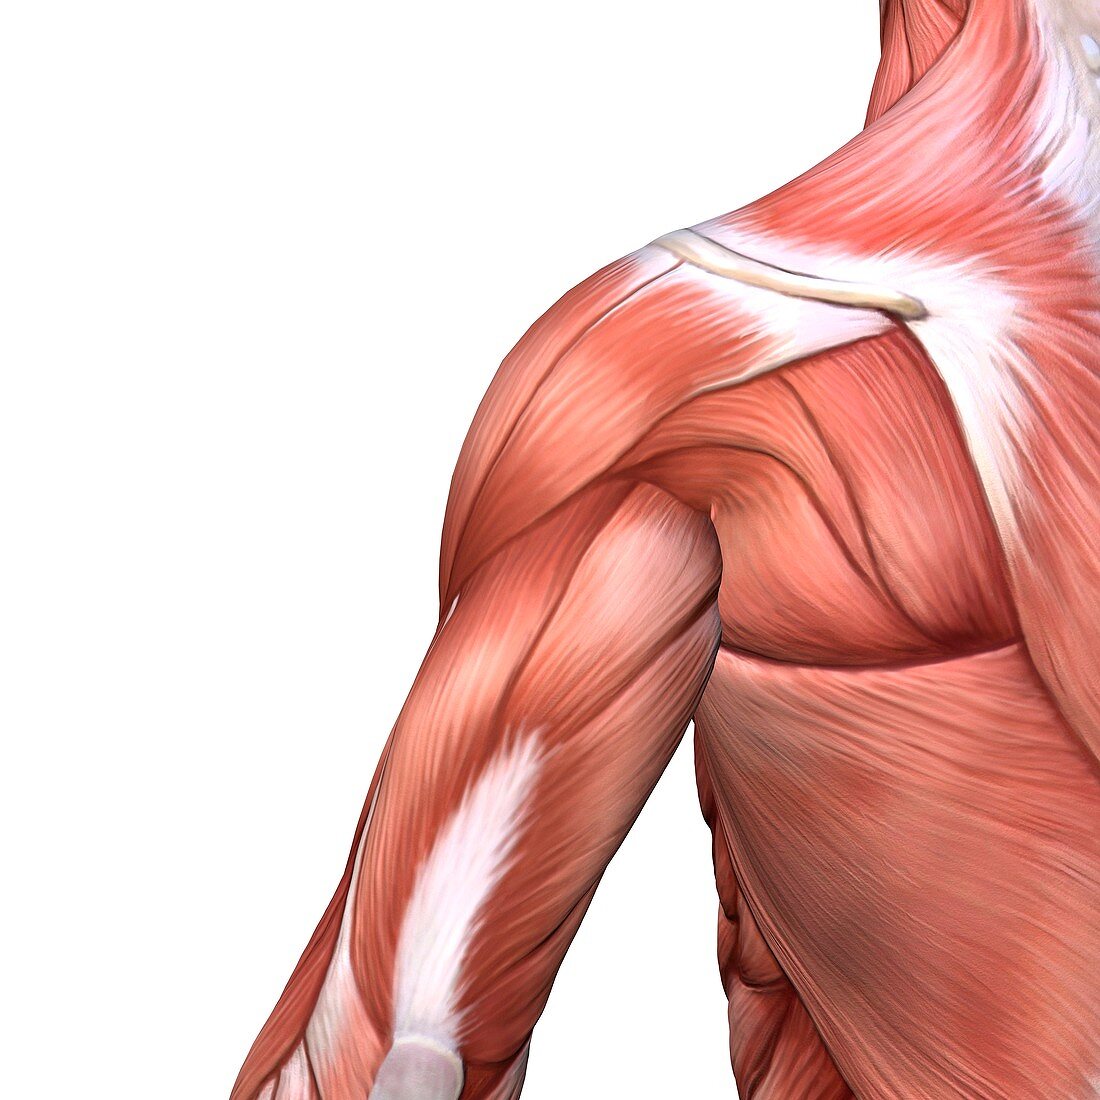 Shoulder and back muscles,artwork